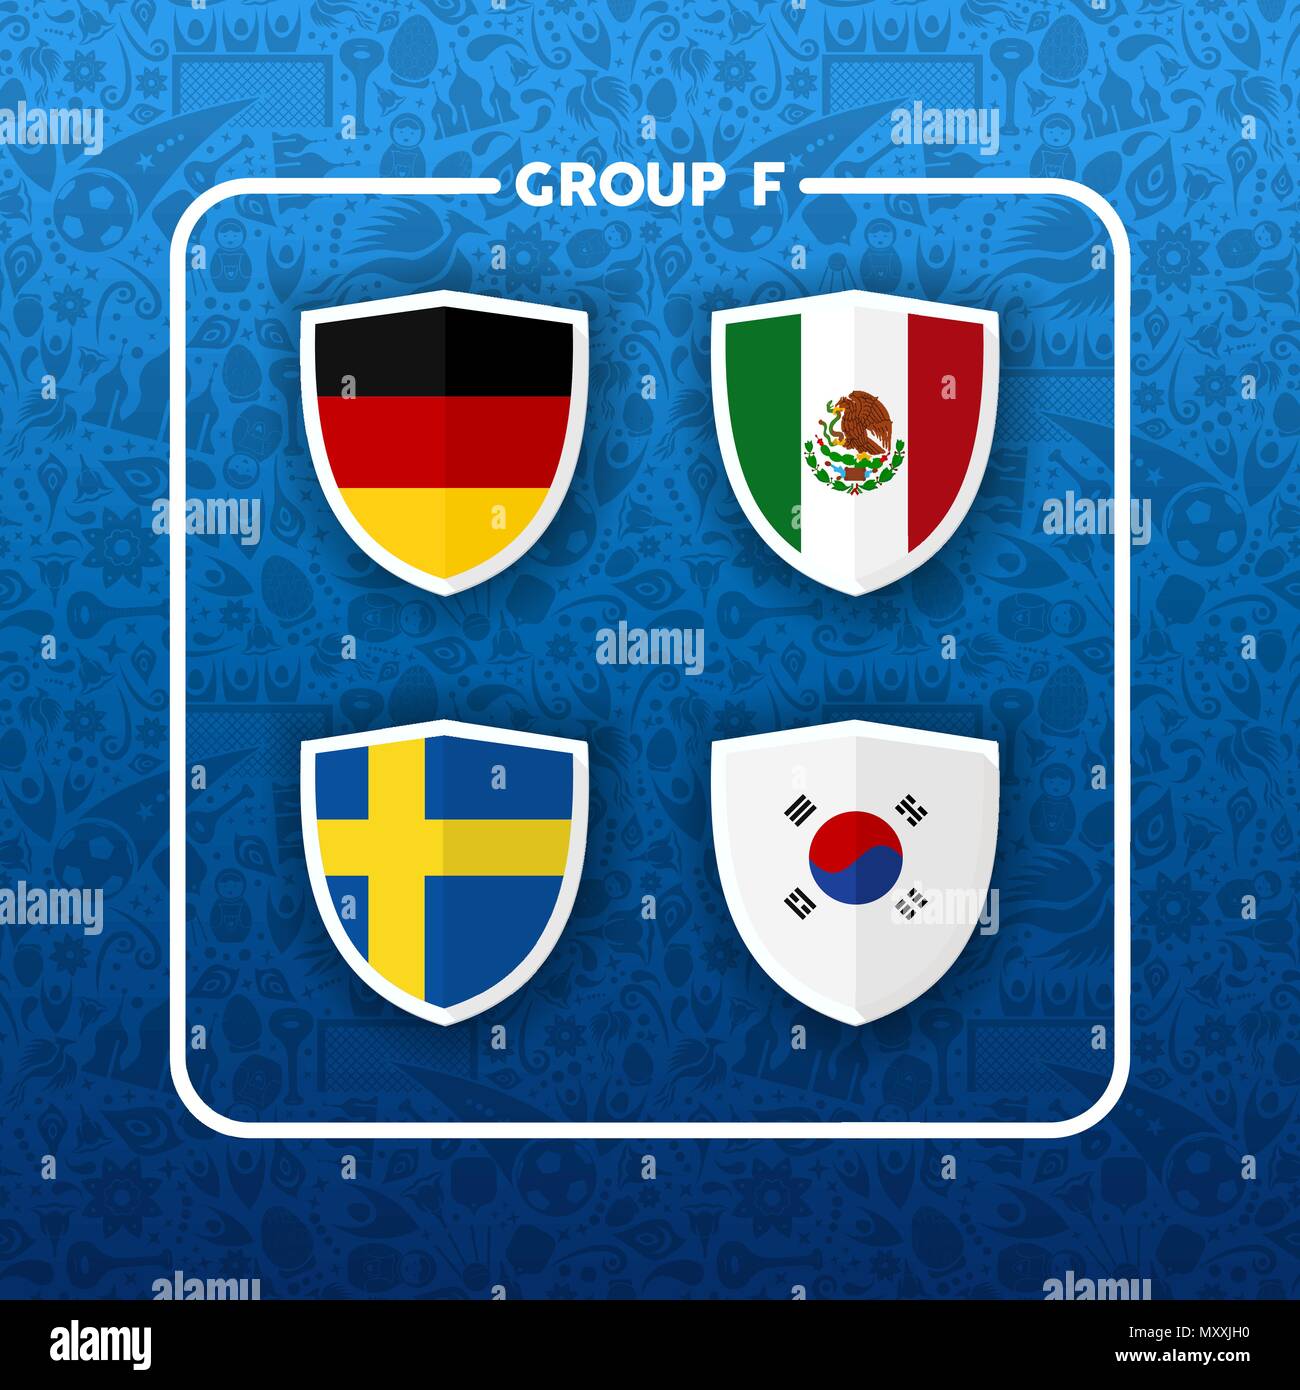 Fußball-Weltmeisterschaft Veranstaltungsplan für 2018. Gruppe F Land team Liste der Fußball-Match spiele. Deutschland, Korea, Mexiko und Schweden. EPS 10 vect Stock Vektor